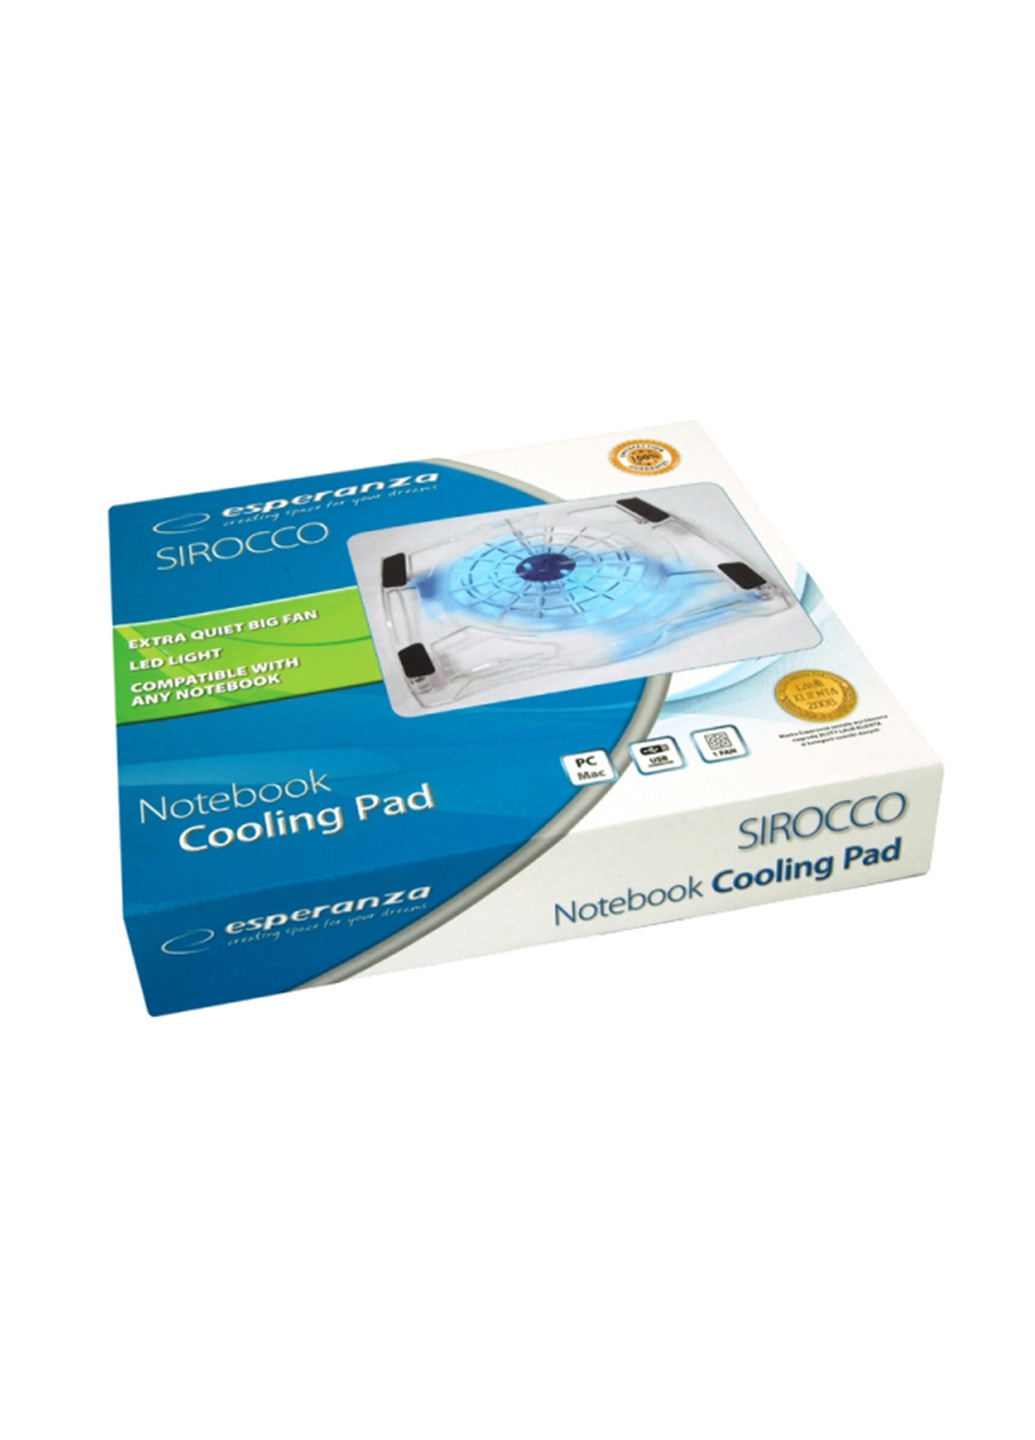 Підставка Notebook Cooling Pad 15.6 '' EA105 Sir Esperanza notebook cooling pad 15.6'' ea105 sir (135632709)